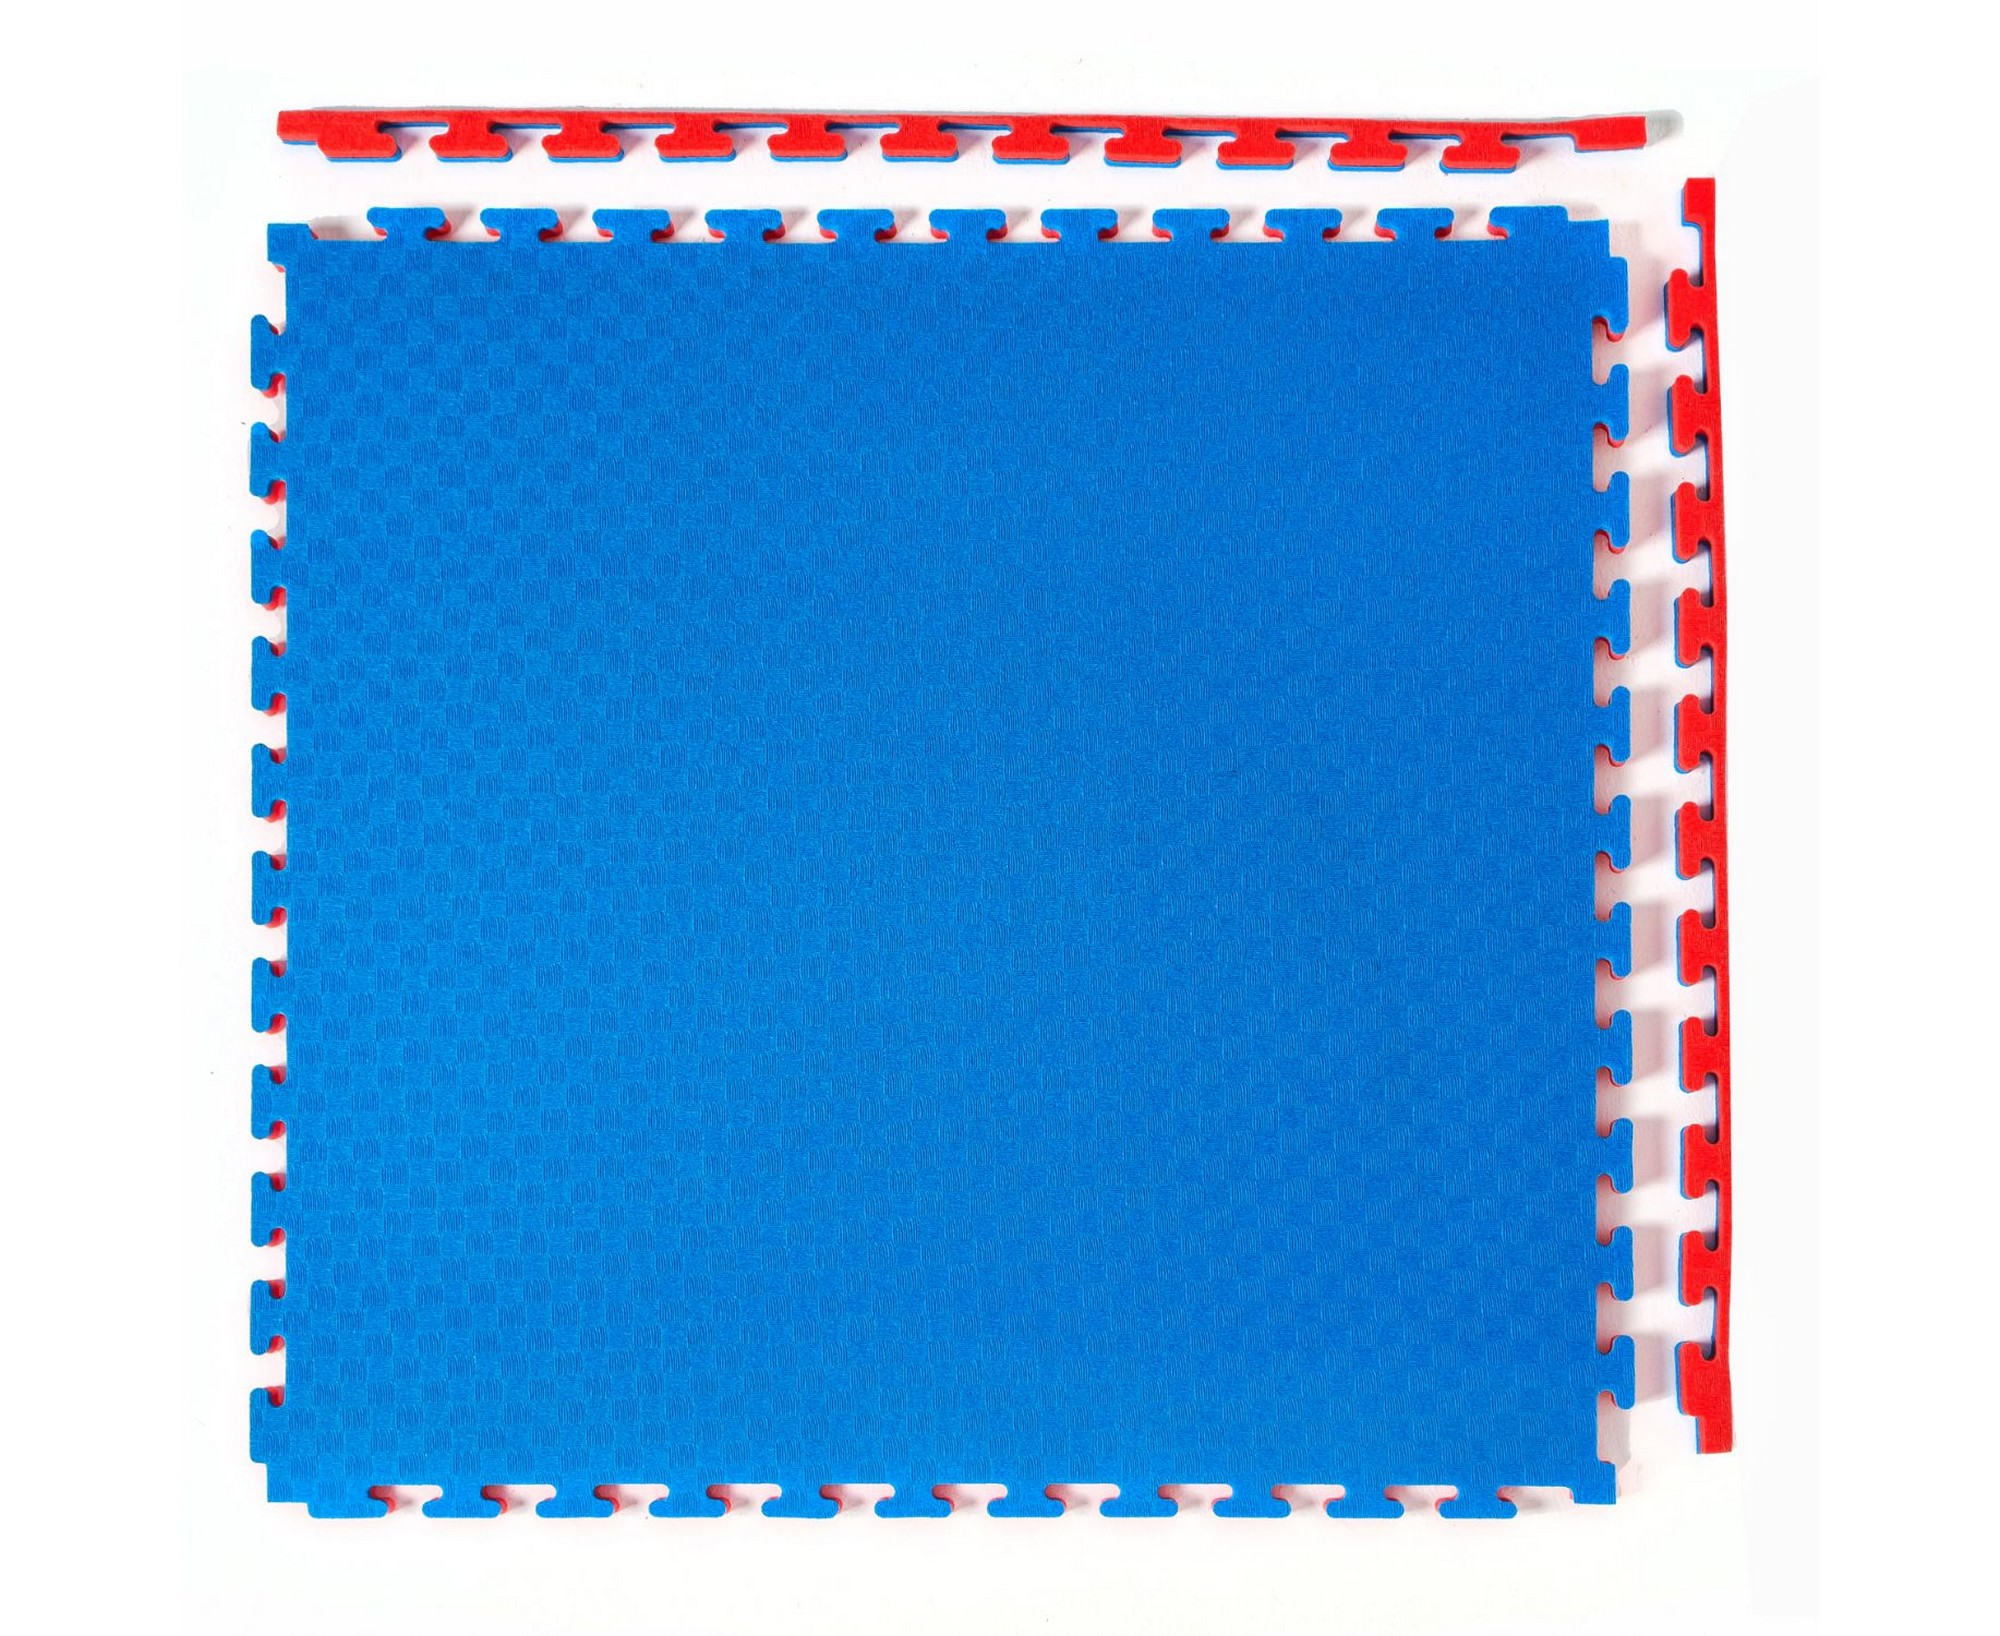 Будо-мат, 100x100 см, 25 мм DFC 9878 сине-красный